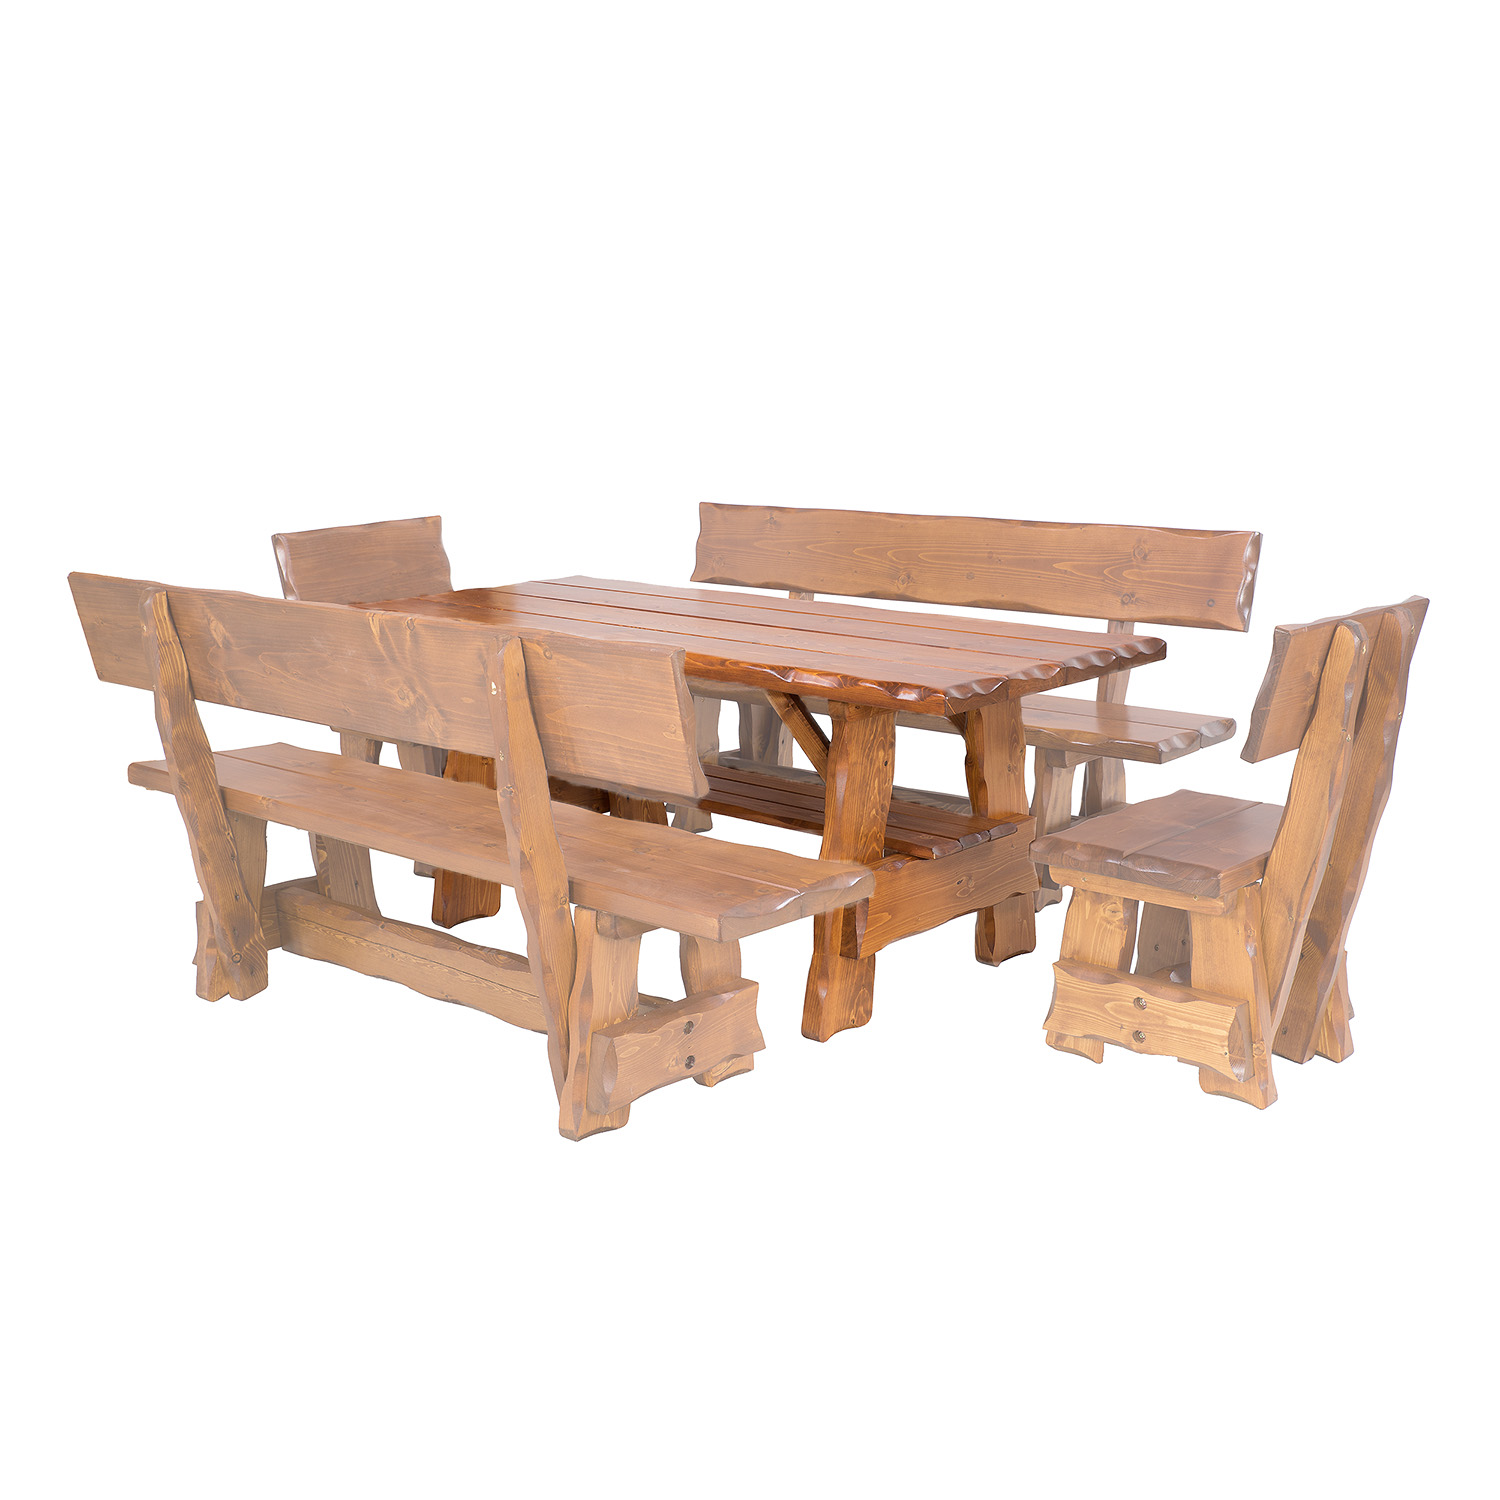 Zahradní stůl ze smrkového dřeva, lakovaný 200x80x83cm - Týk lak